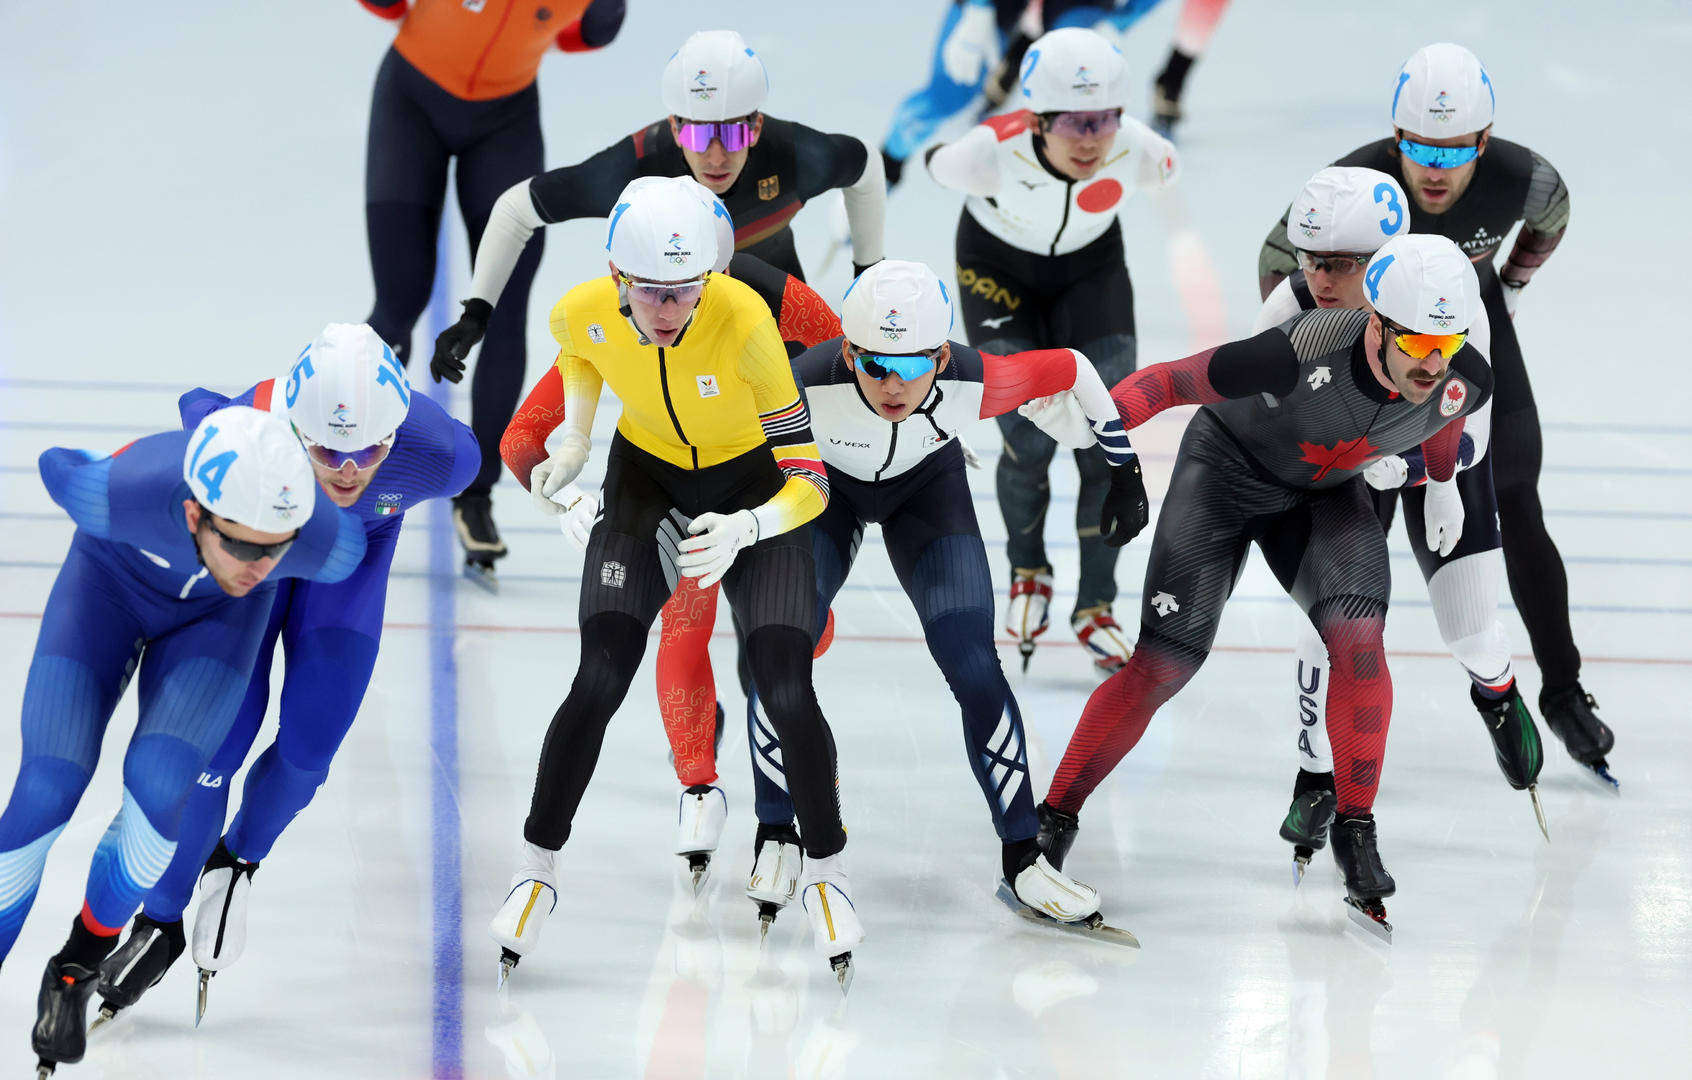 中国|速度滑冰男子集体出发决赛比利时选手夺冠 宁忠岩第12